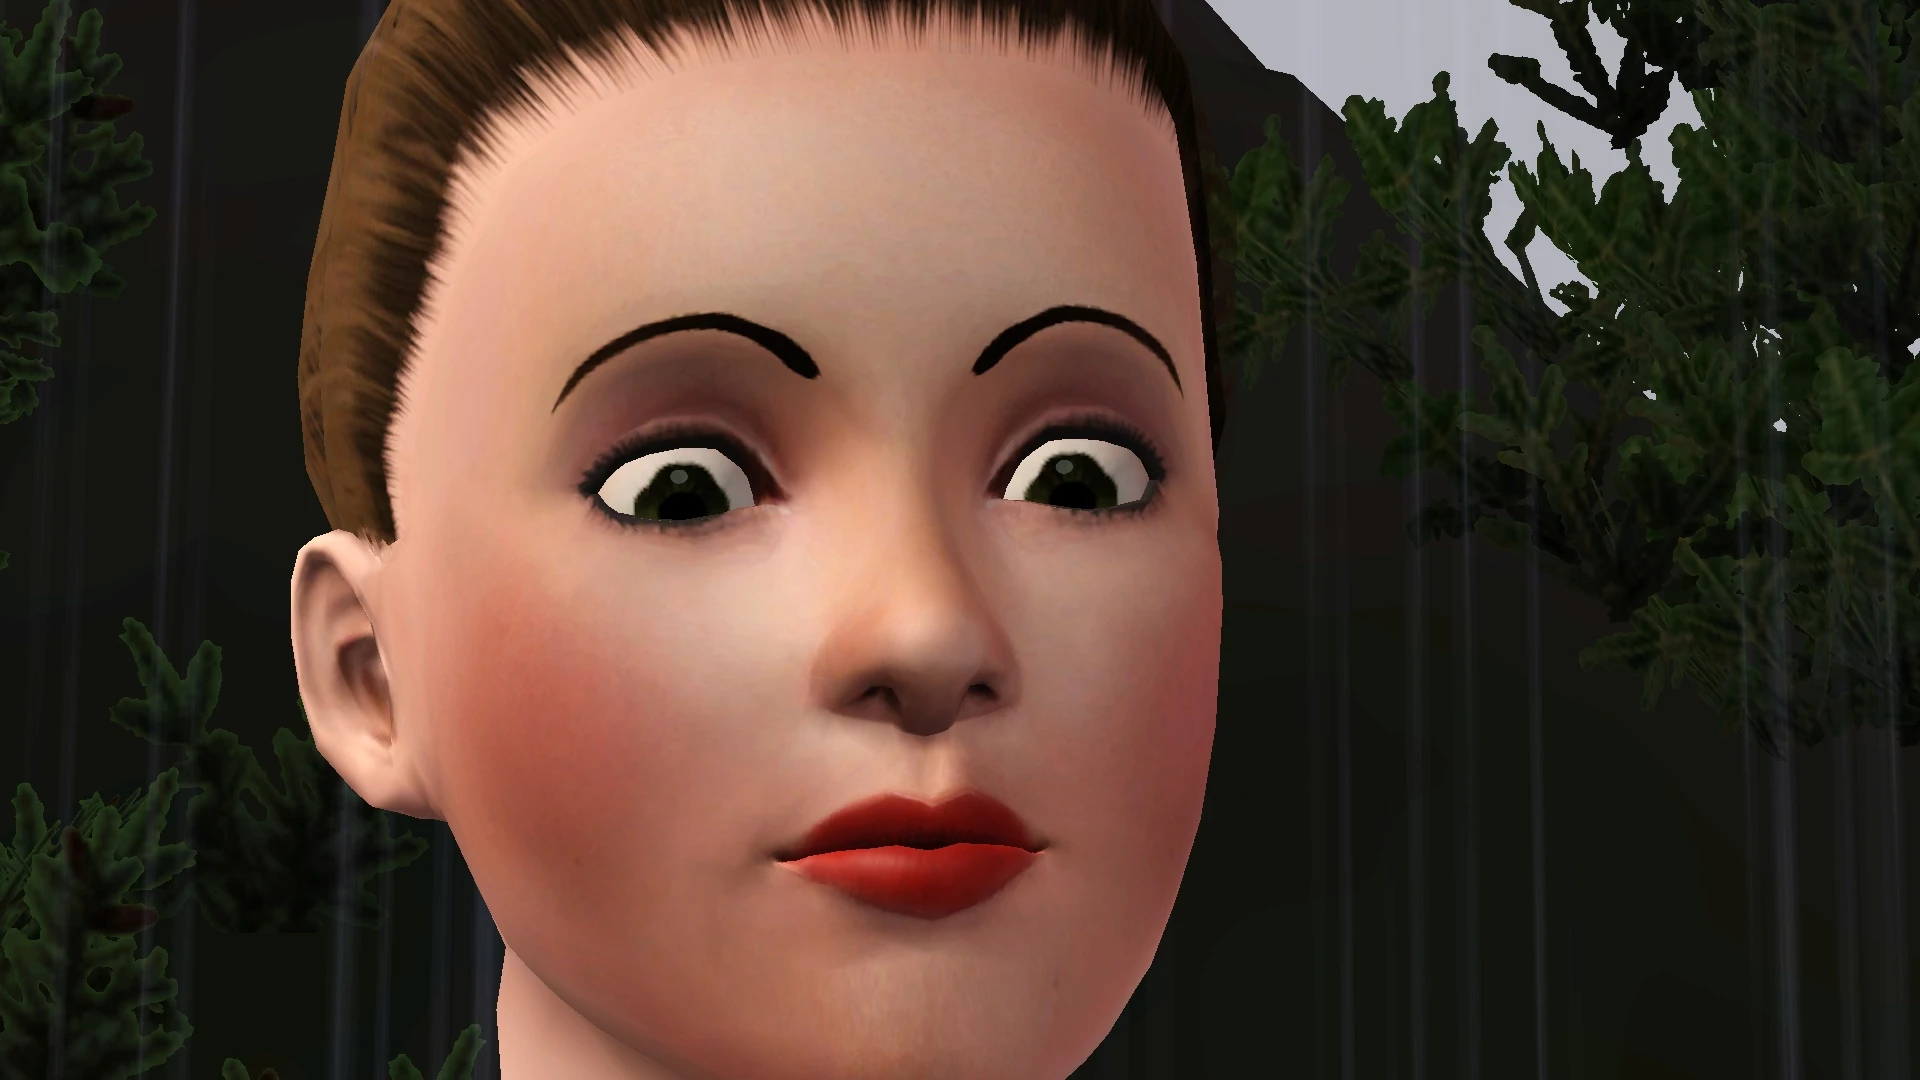 Creepy sim is creepy